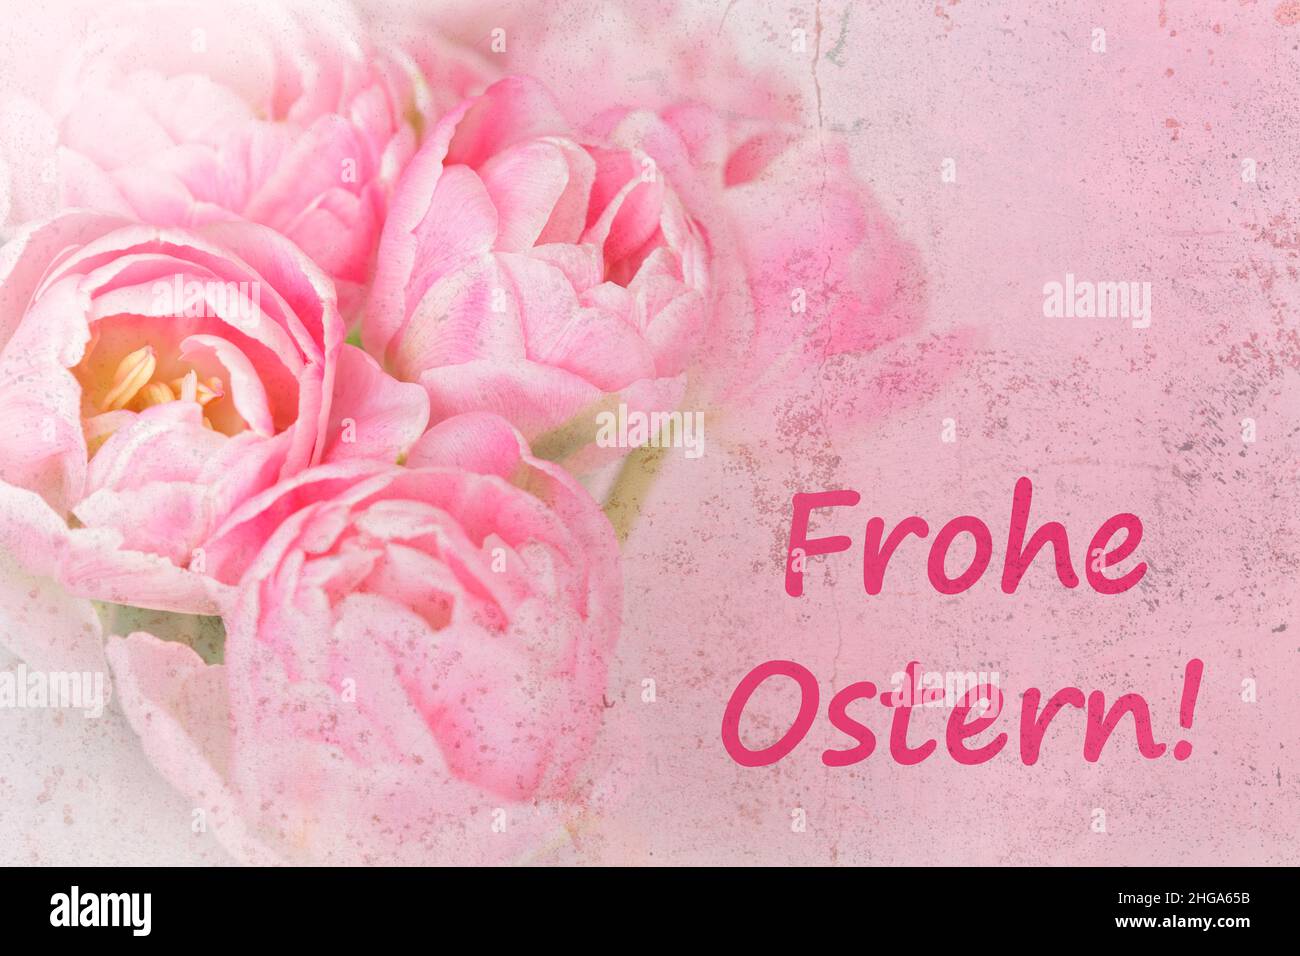 Rosa Tulpenblumen mit Text: Frohe Ostern in deutscher Sprache, verzweifelter Grunge-Effekt, nostalgische Grußkarten-Vorlage. Stockfoto